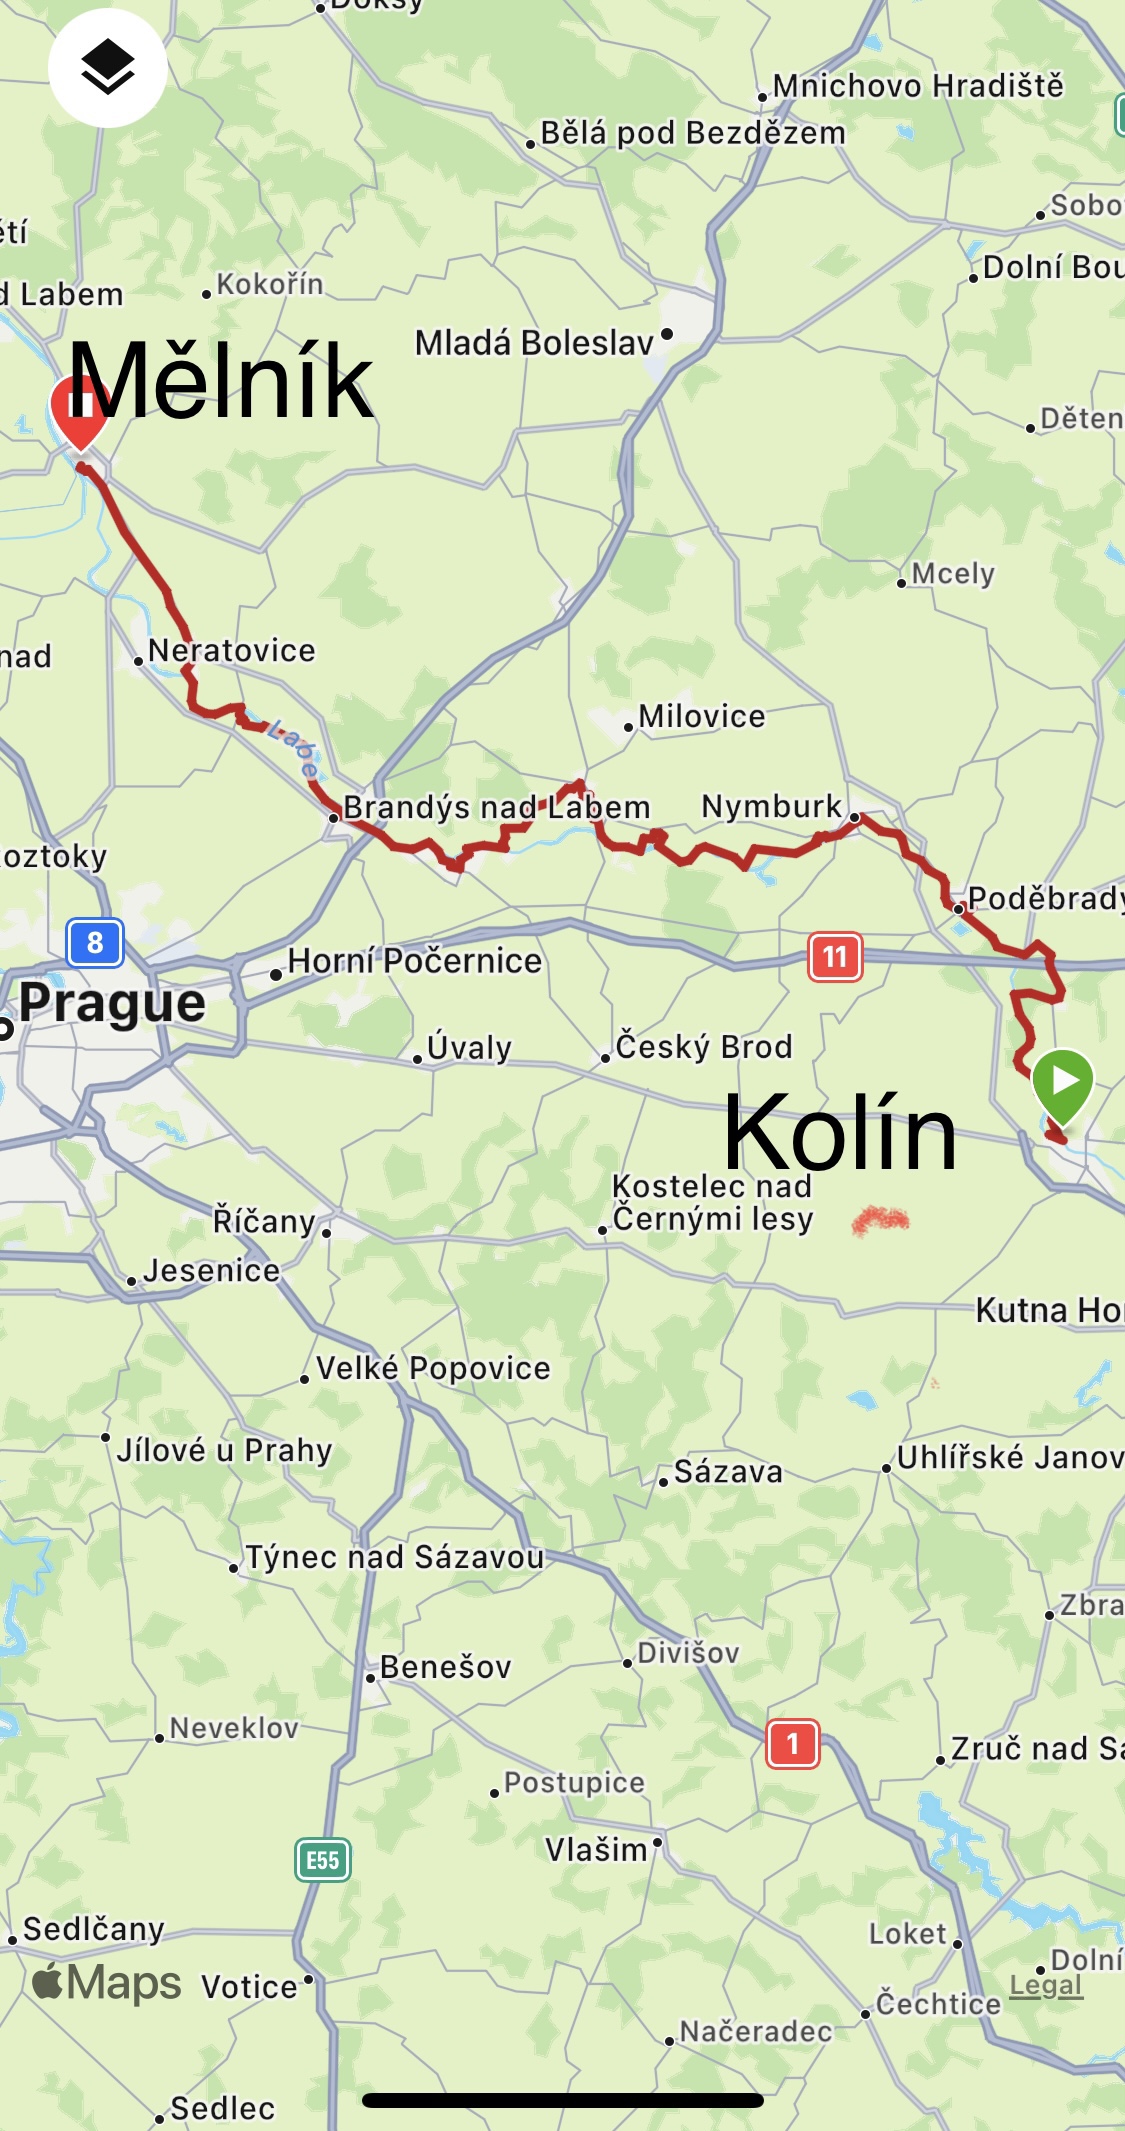 Day 6 from Kolín to Mělník